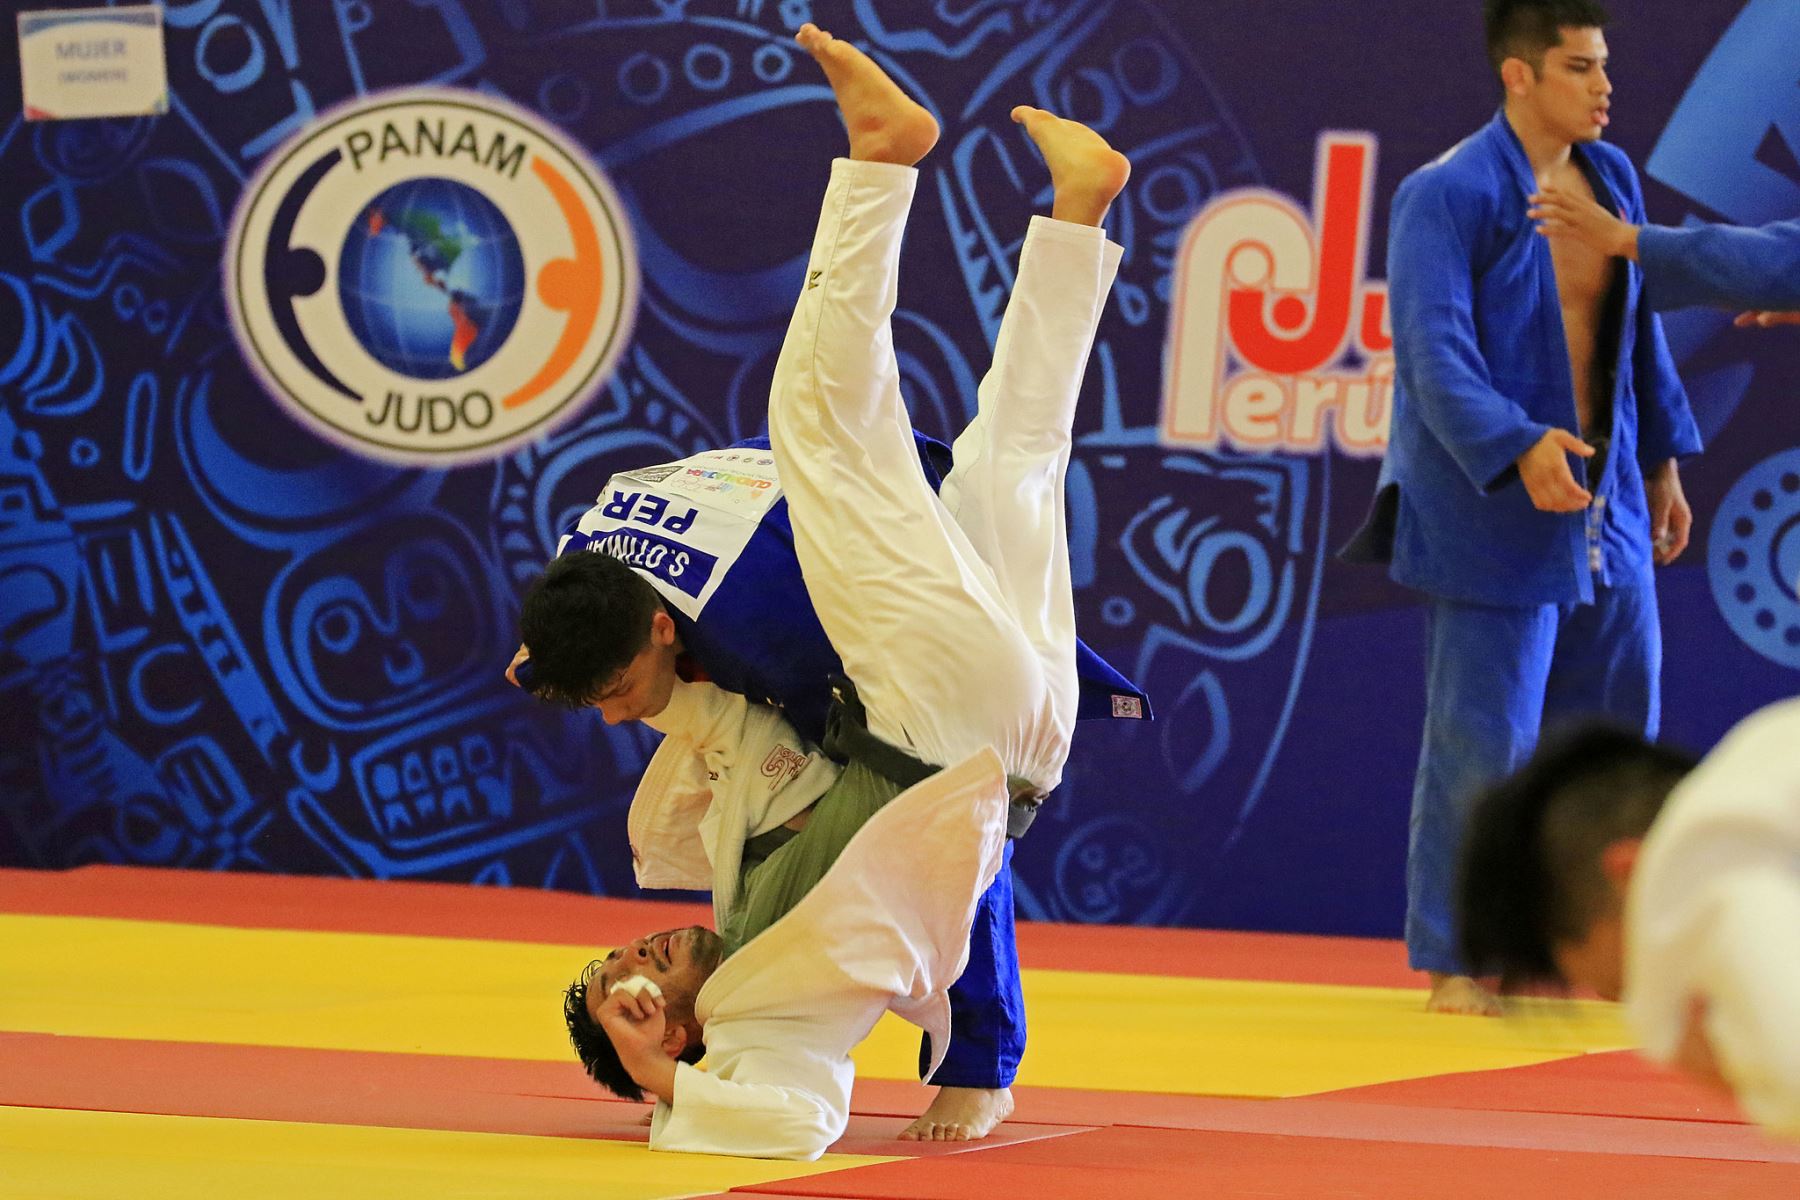 La Videna acogerá desde mañana los campeonatos presenciales de judo